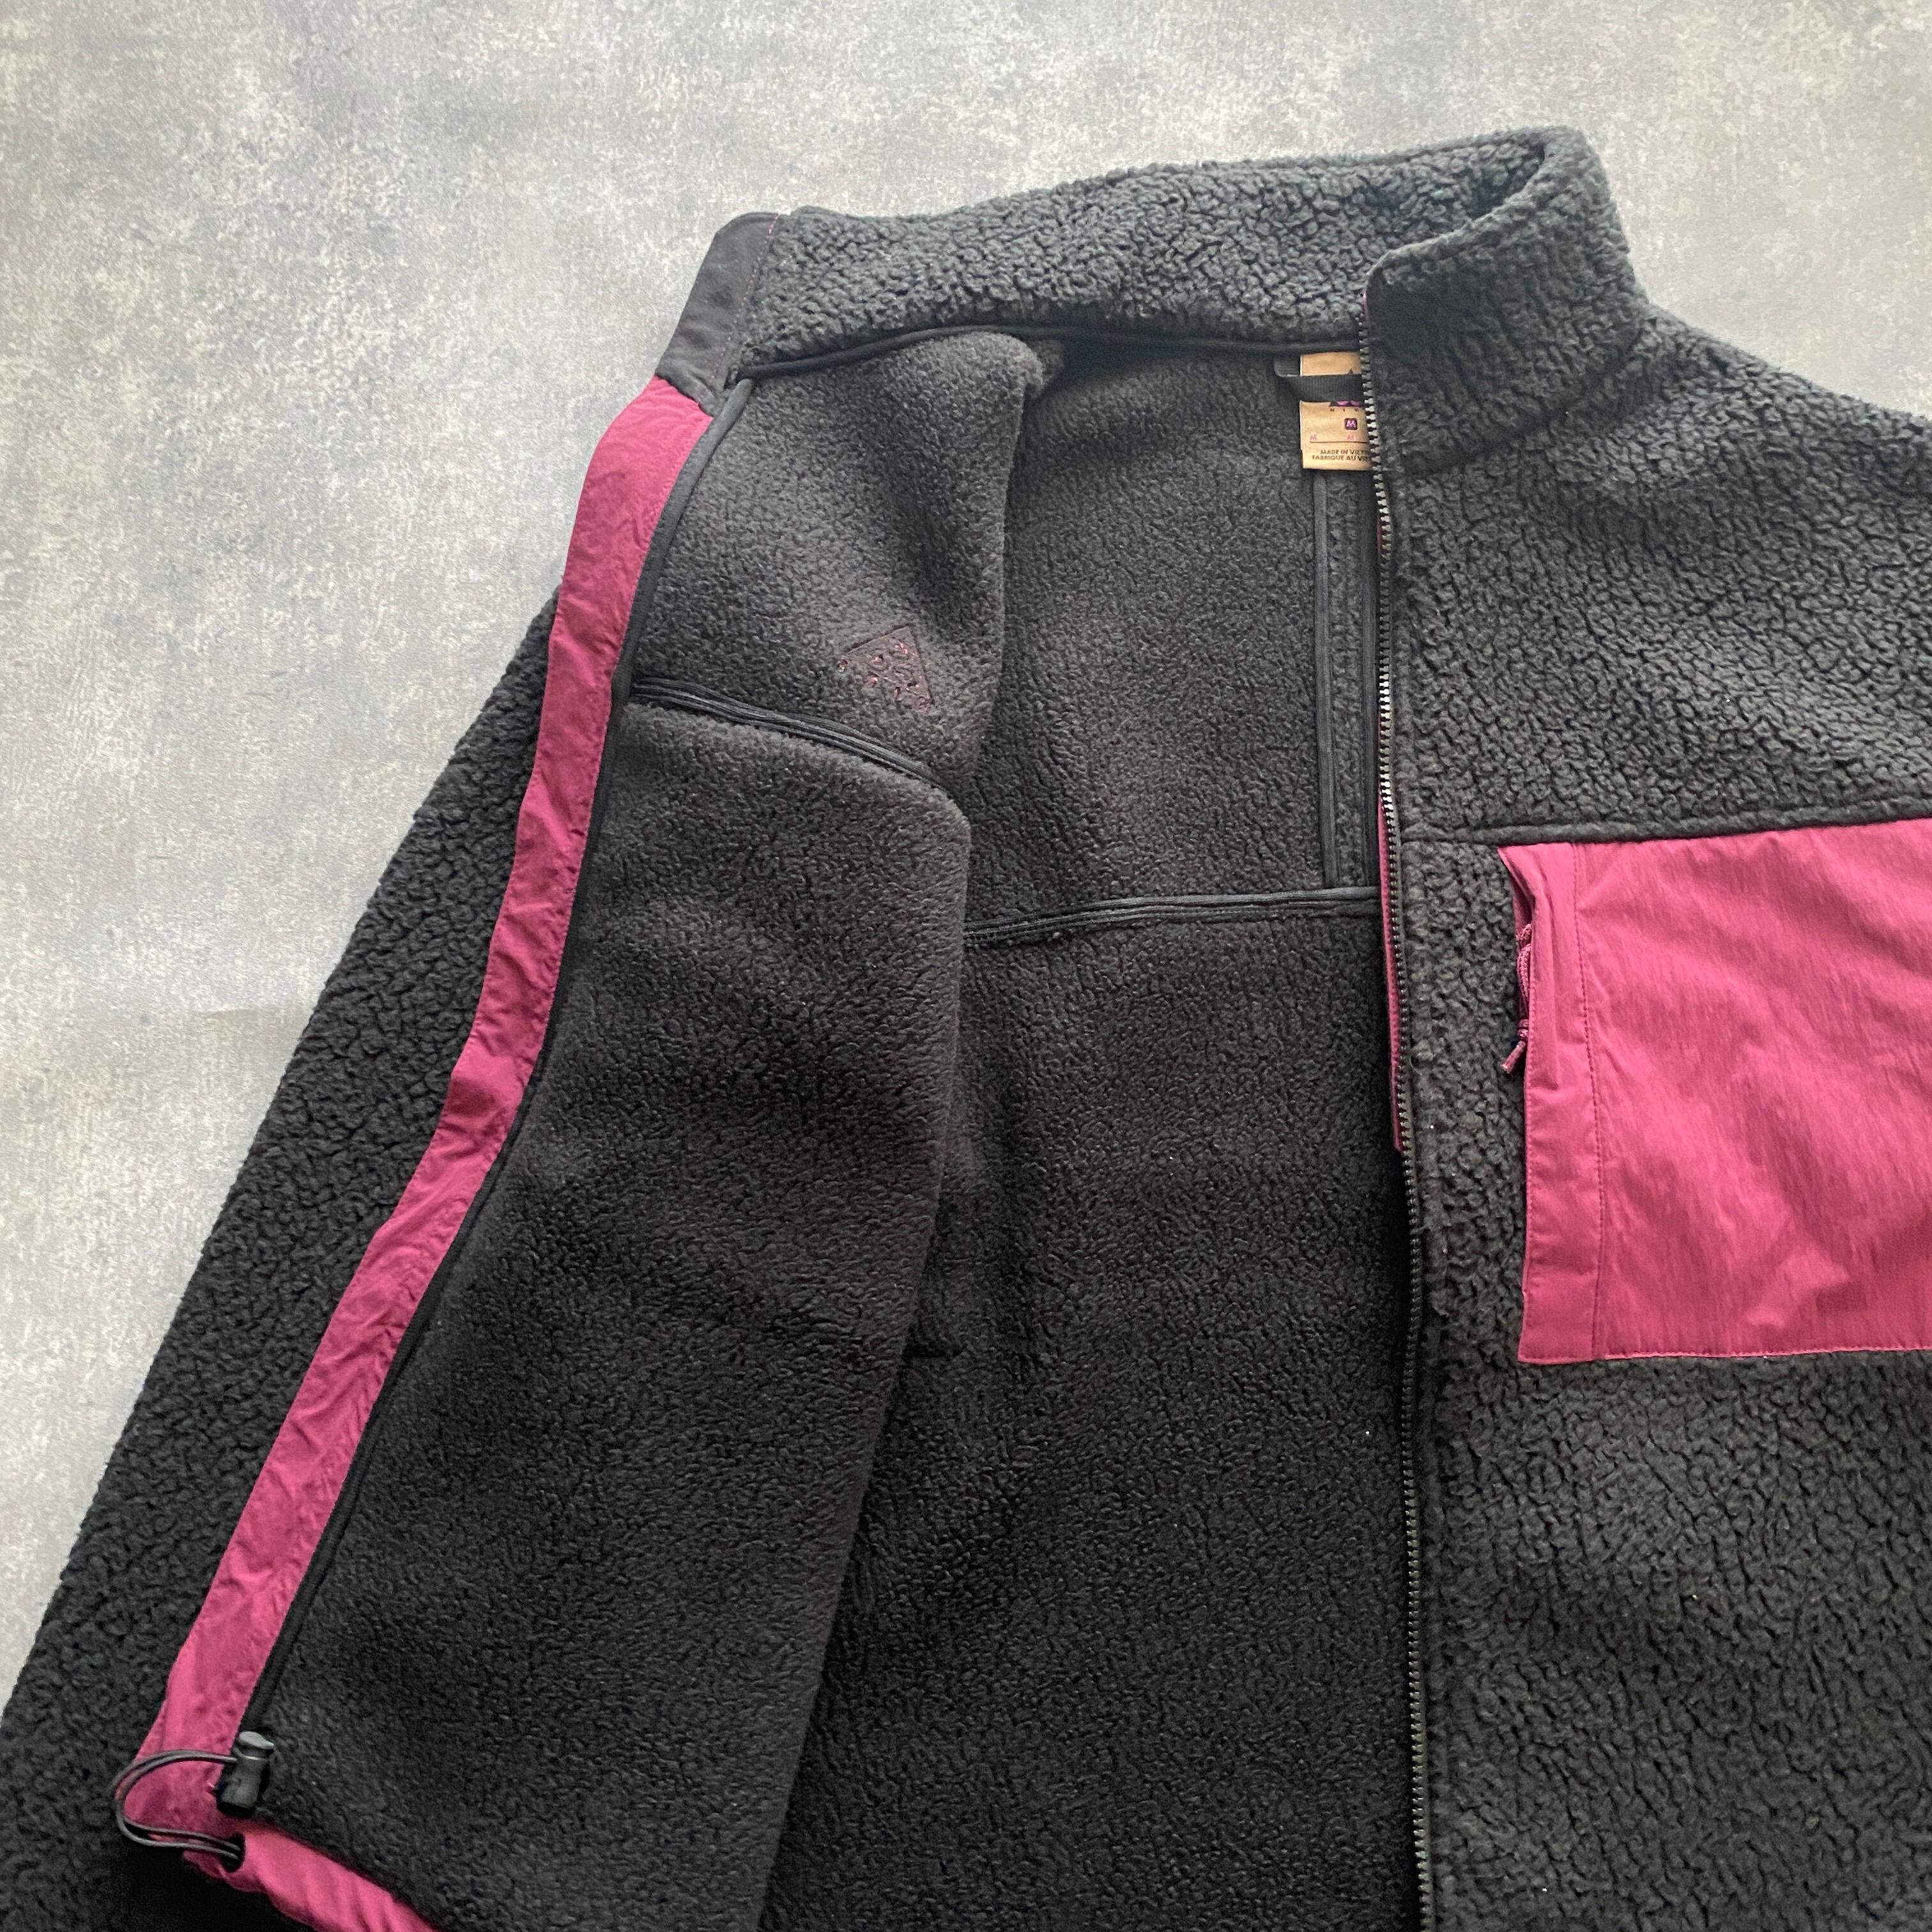 ナイキacg 刺繍ワンポイントロゴ バイカラー ボアフリースジャケット